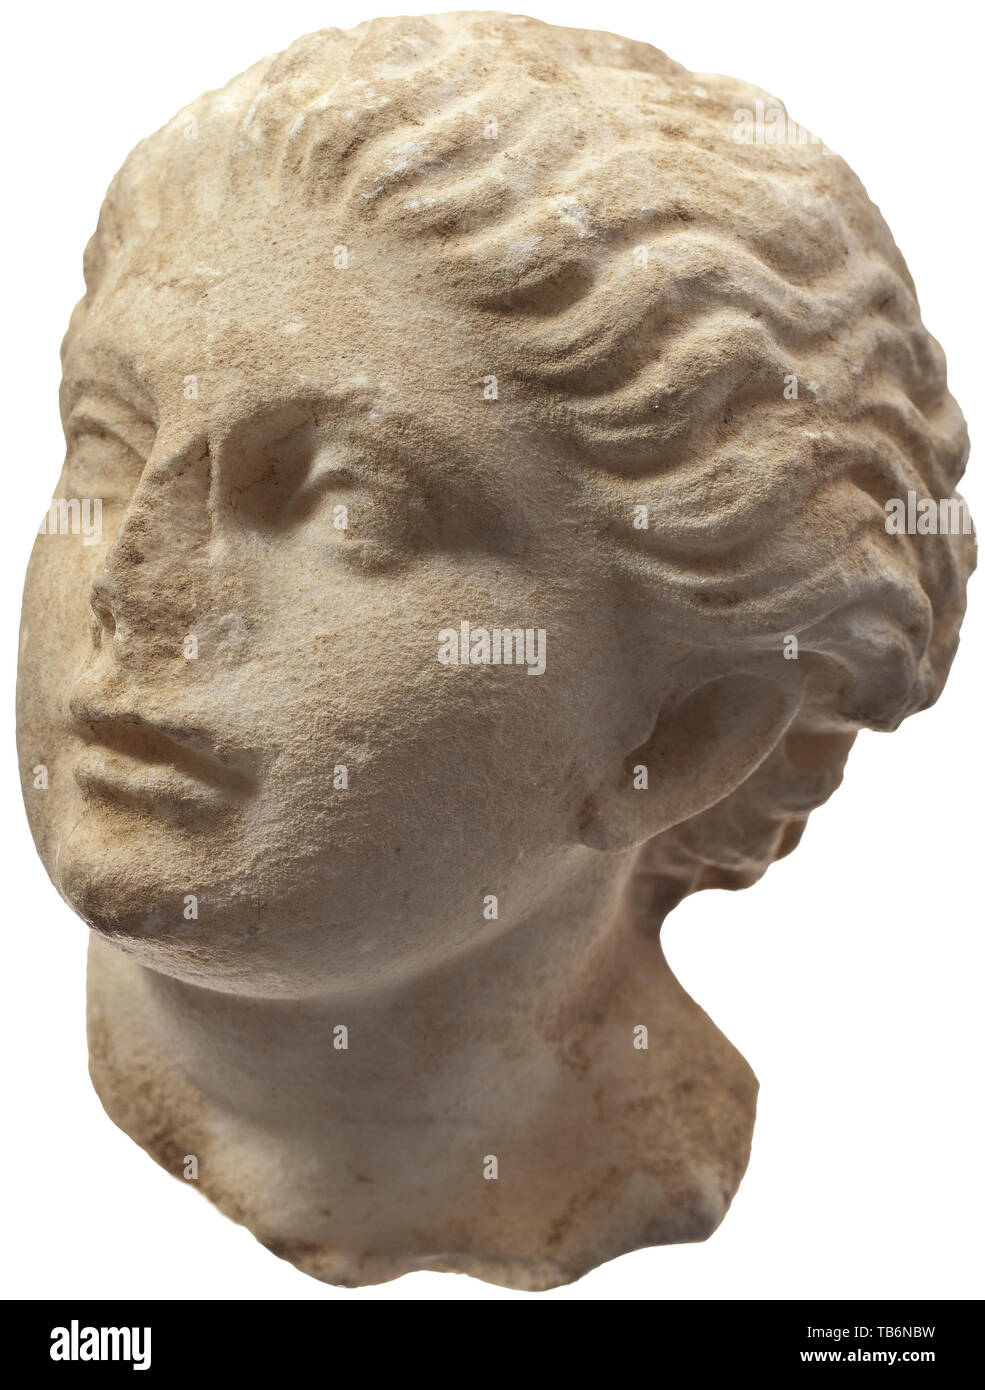 Ein maiden Kopf (Nymphe), Skulpturen aus dem 19. Jahrhundert auf einer hellenistischen Modell, die fein gearbeitete Kopf eines jungen Mädchens, an einer Skulptur aus dem 2. Jahrhundert v. Chr. modelliert. Die Position des Kopfes, nach links gedreht, und die Einzelheiten der Frisur vorschlagen, mit dem Titel "Einladung, die die Skulptur wurde von der Nymphe in der Gruppe inspiriert zum Tanz". Die rechte Seite der Nase abgebrochen, die leicht raue Oberfläche. Minimale klopft. Eine charmante kleine Stein Skulptur. Höhe 15 cm. Provenienz: Polnische private Sammlung, durch den Versender aus Fett erworben, Additional-Rights - Clearance-Info - Not-Available Stockfoto